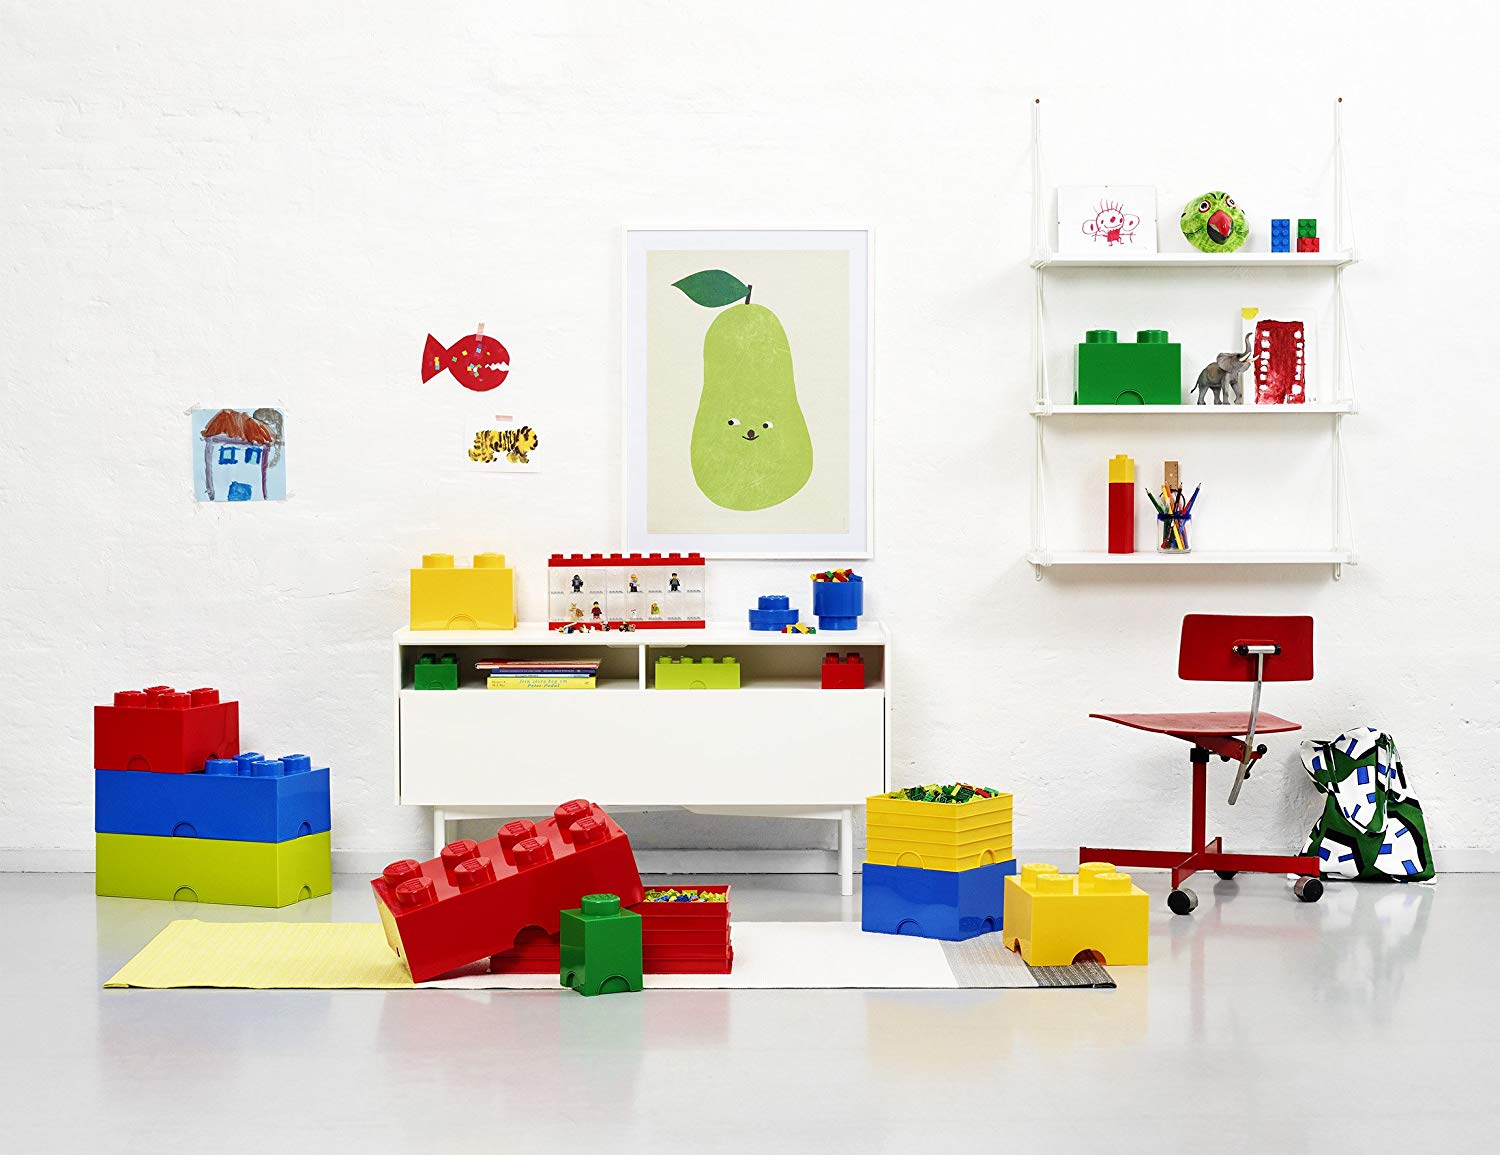 Ukládejte do plastového boxu s víkem LEGO kostky, hračky, drobnosti.